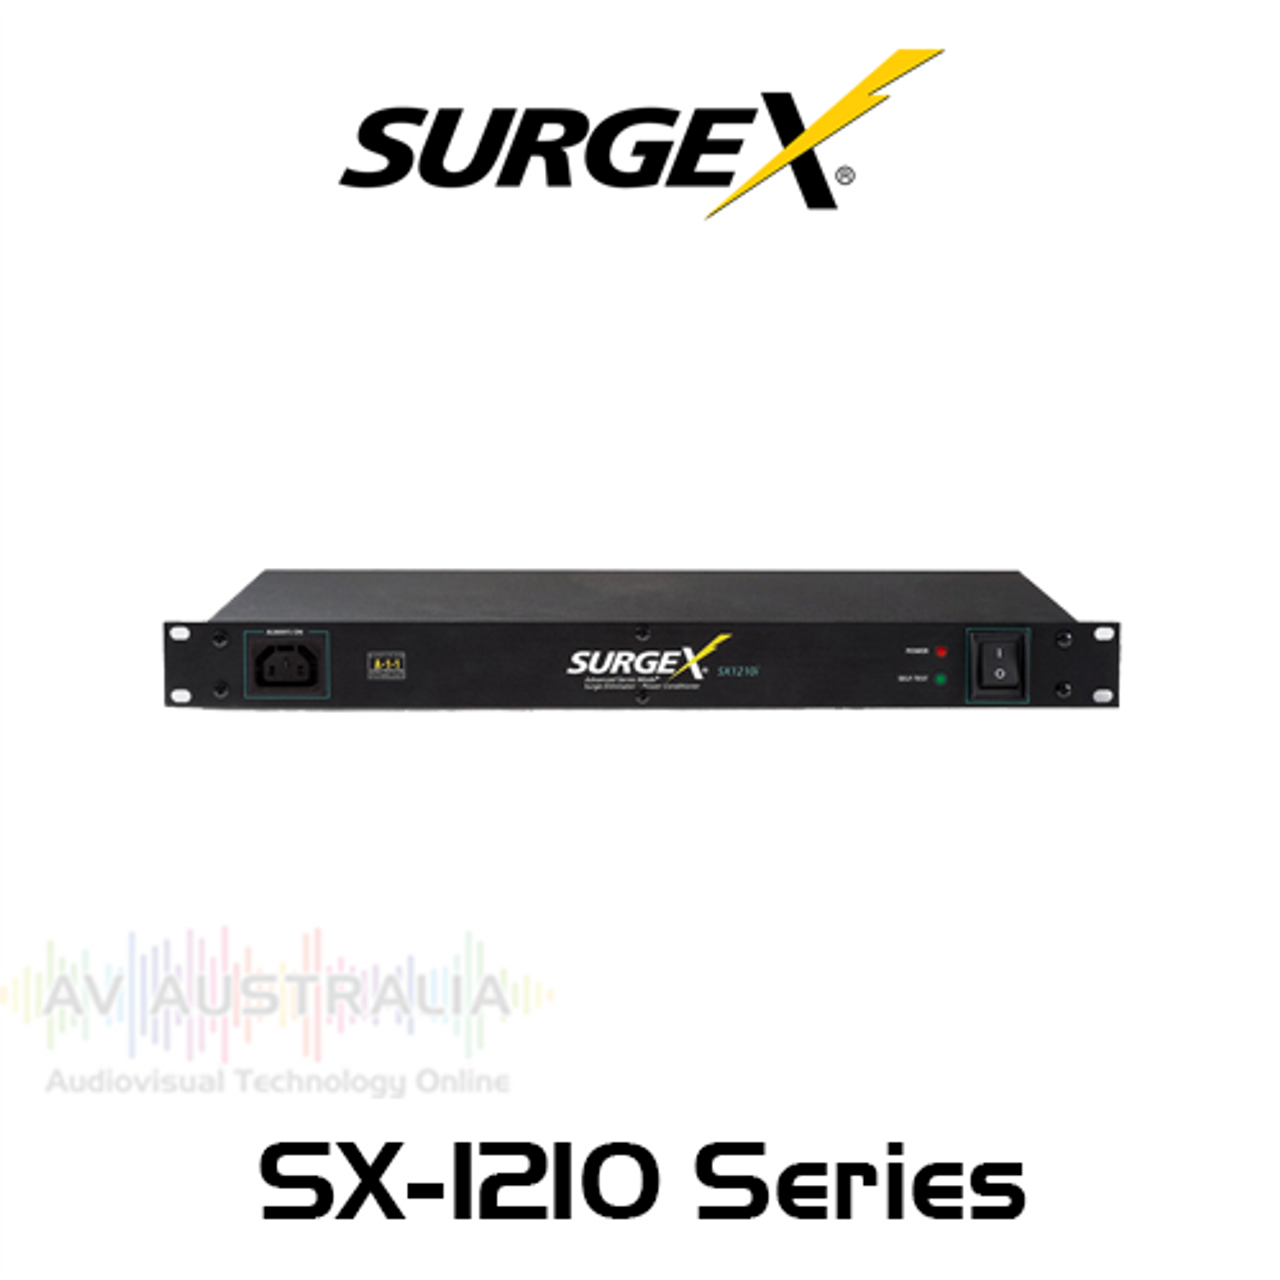 SurgeX Advanced SX1210 Series 1RU Rack Mount Surge Eliminator With IEC Connectors